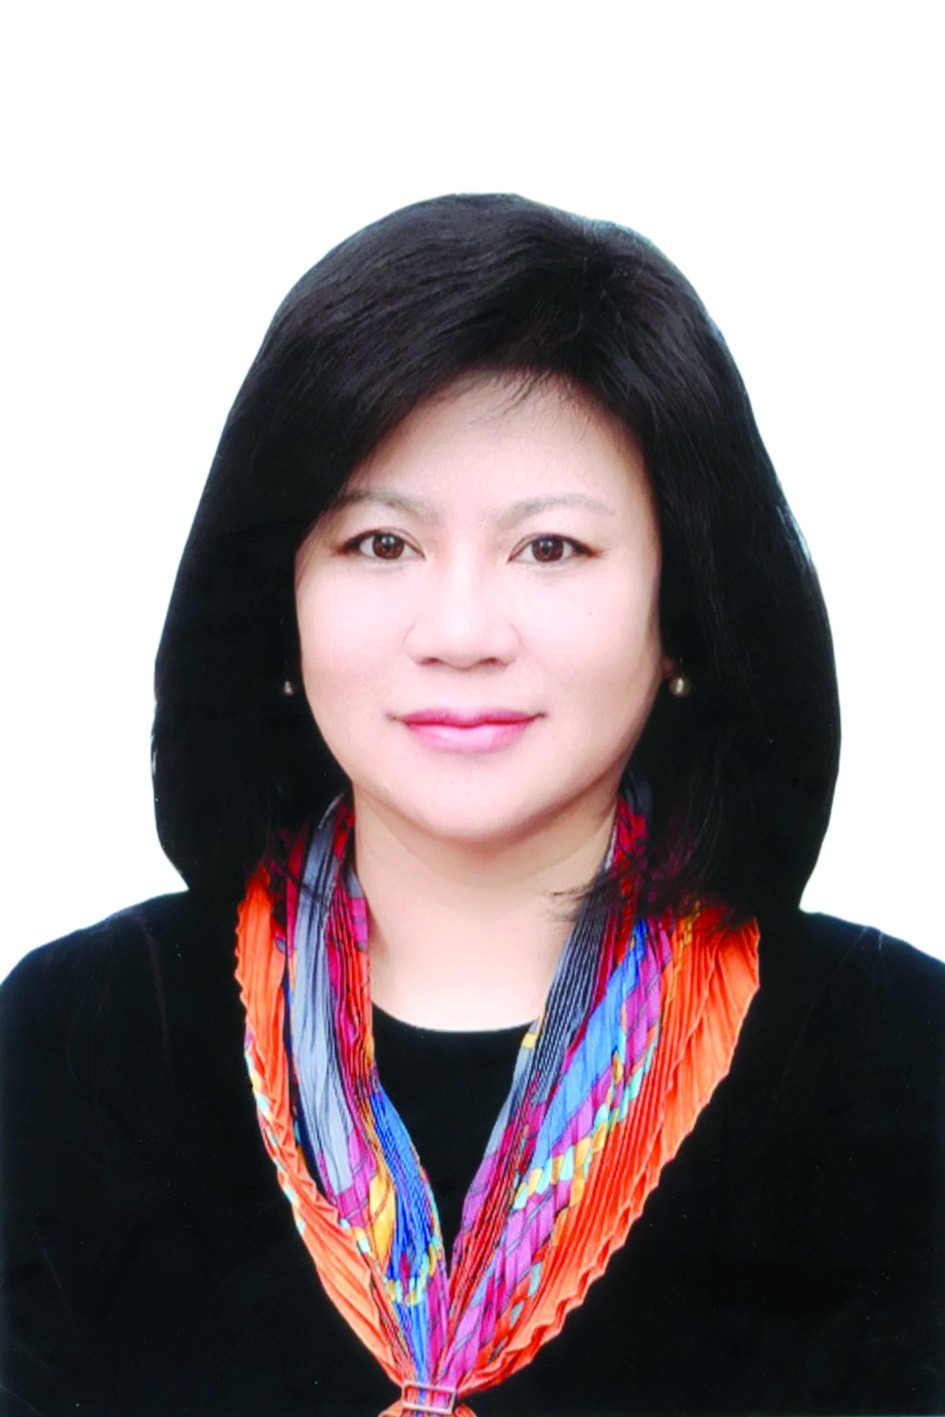 Chương trình hành động của Tổng Giám đốc Công ty Cổ phần Hanel Bùi Thị Hải Yến, ứng cử viên đại biểu HĐND TP Hà Nội nhiệm kỳ 2021 - 2026 - Ảnh 1